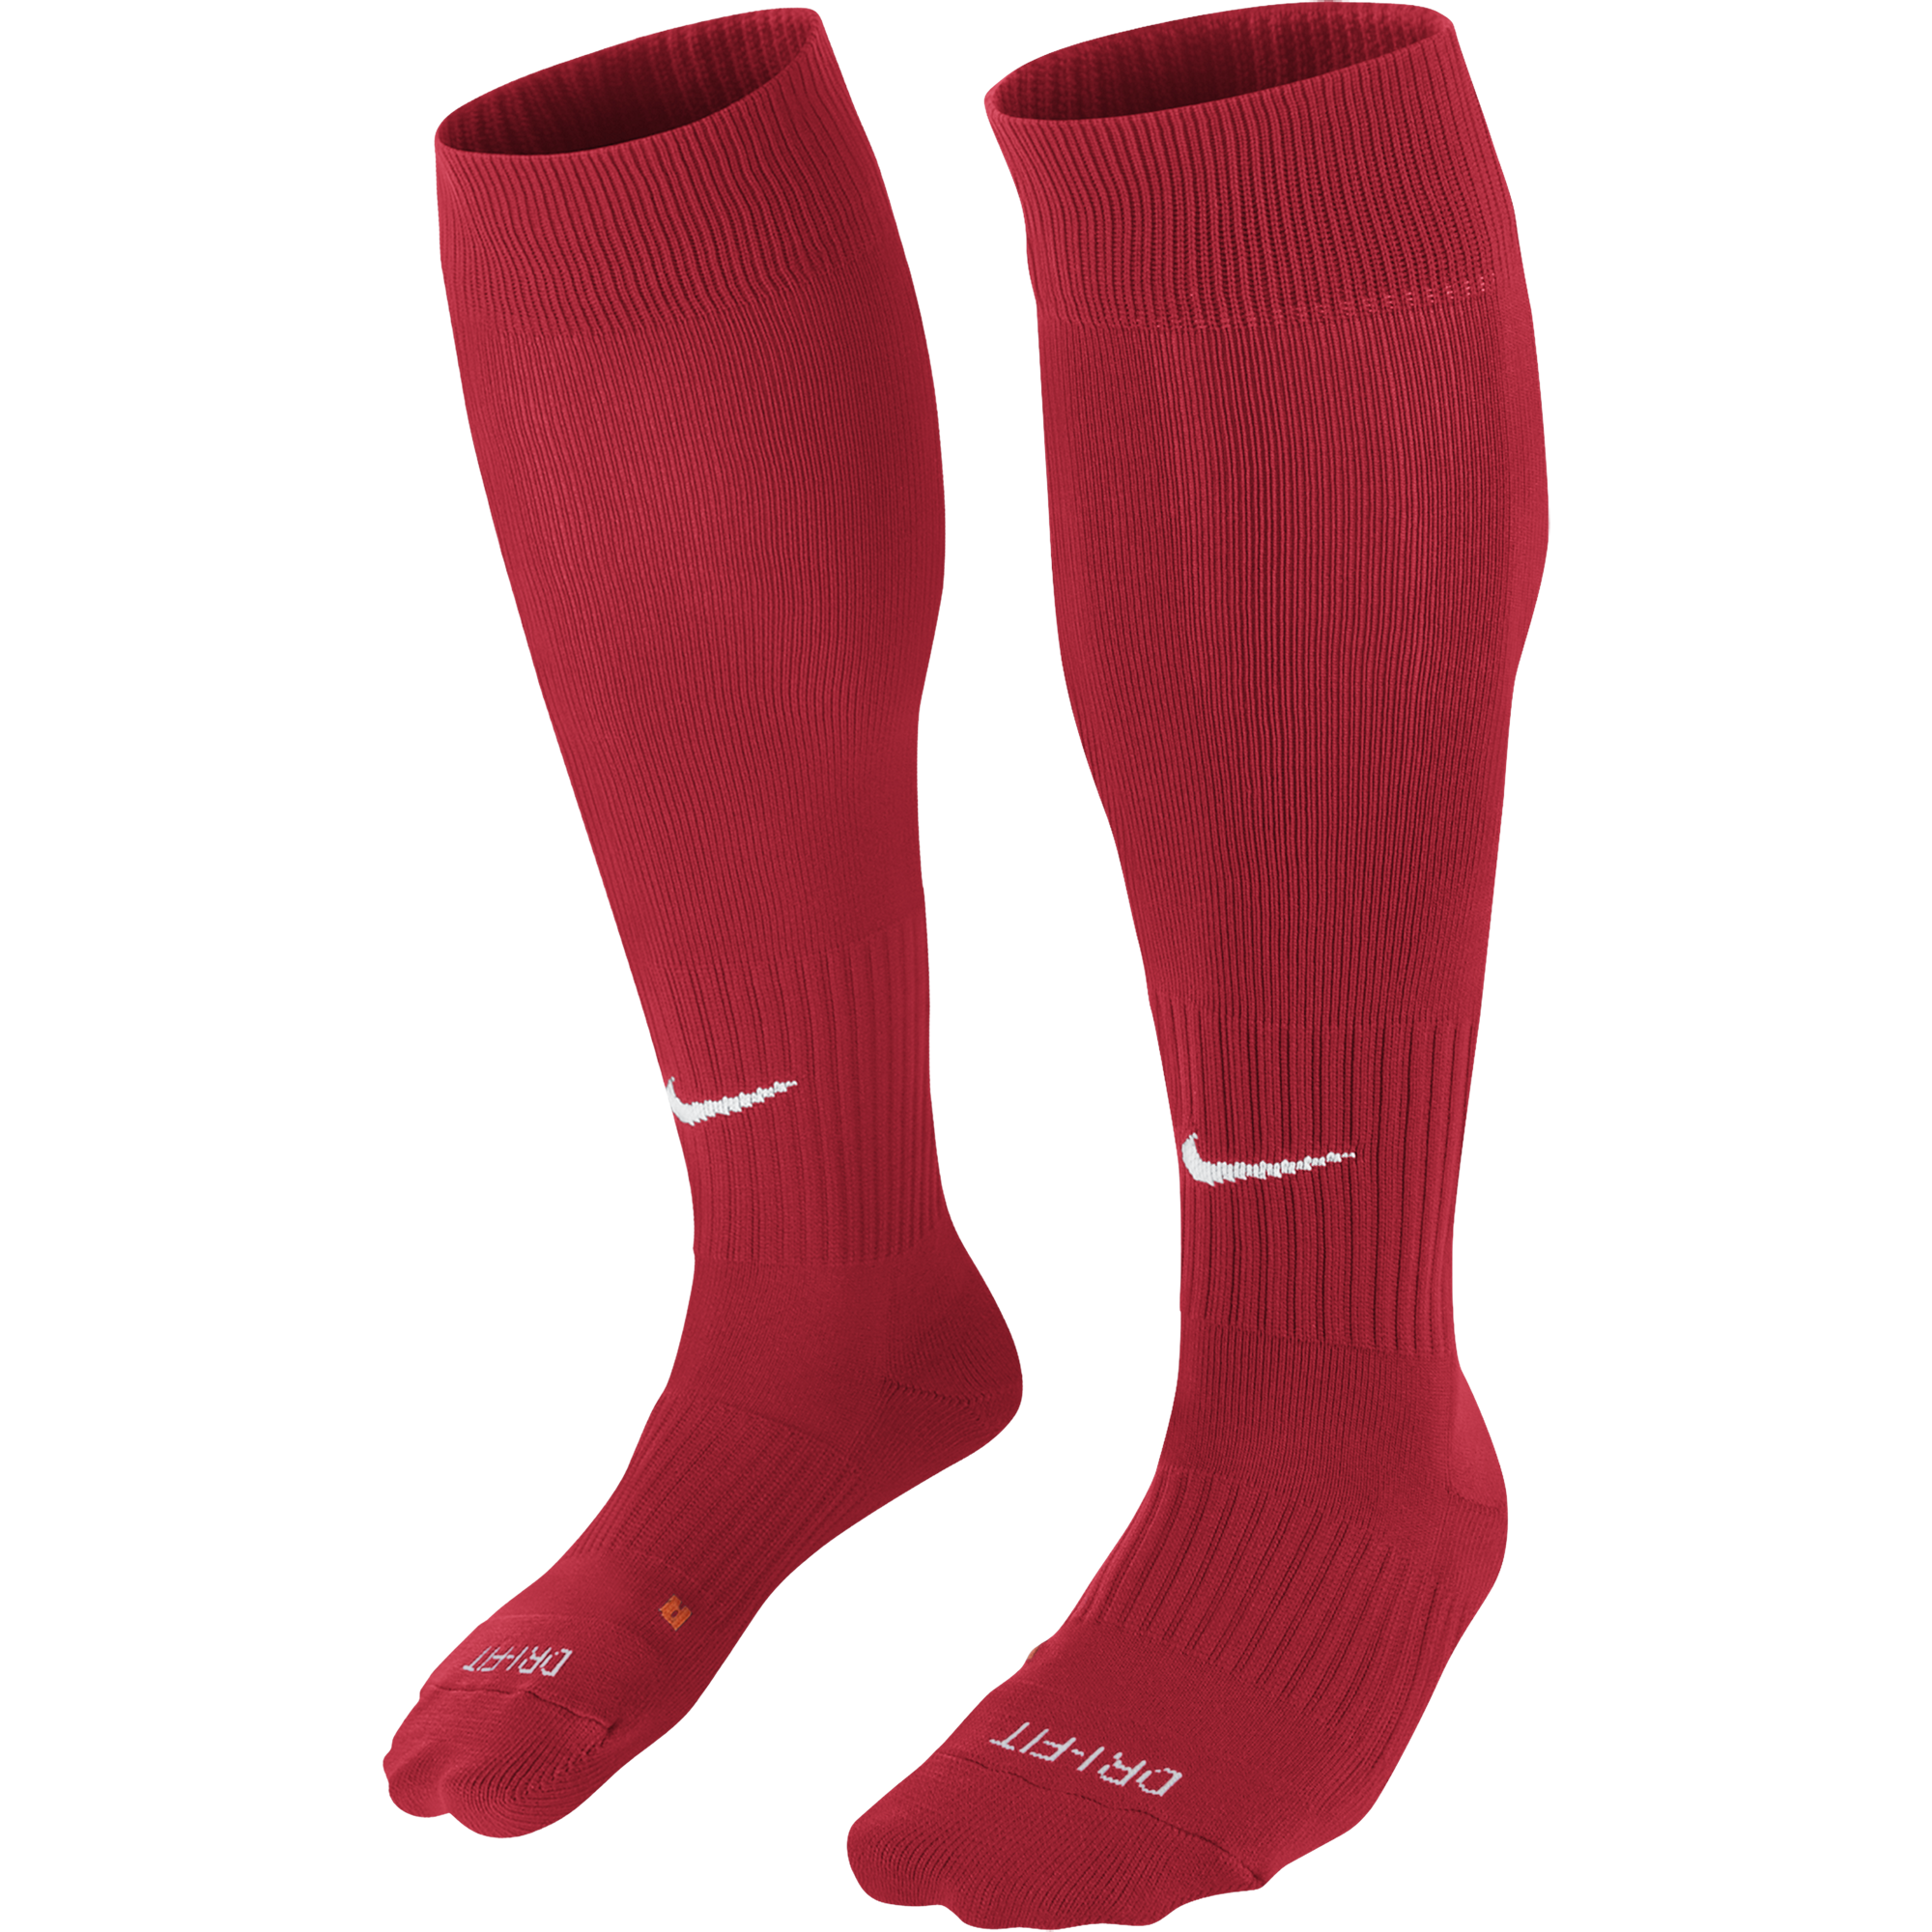 Beaumont Park F.C. - Nike Classic socks - Fanatics Supplies